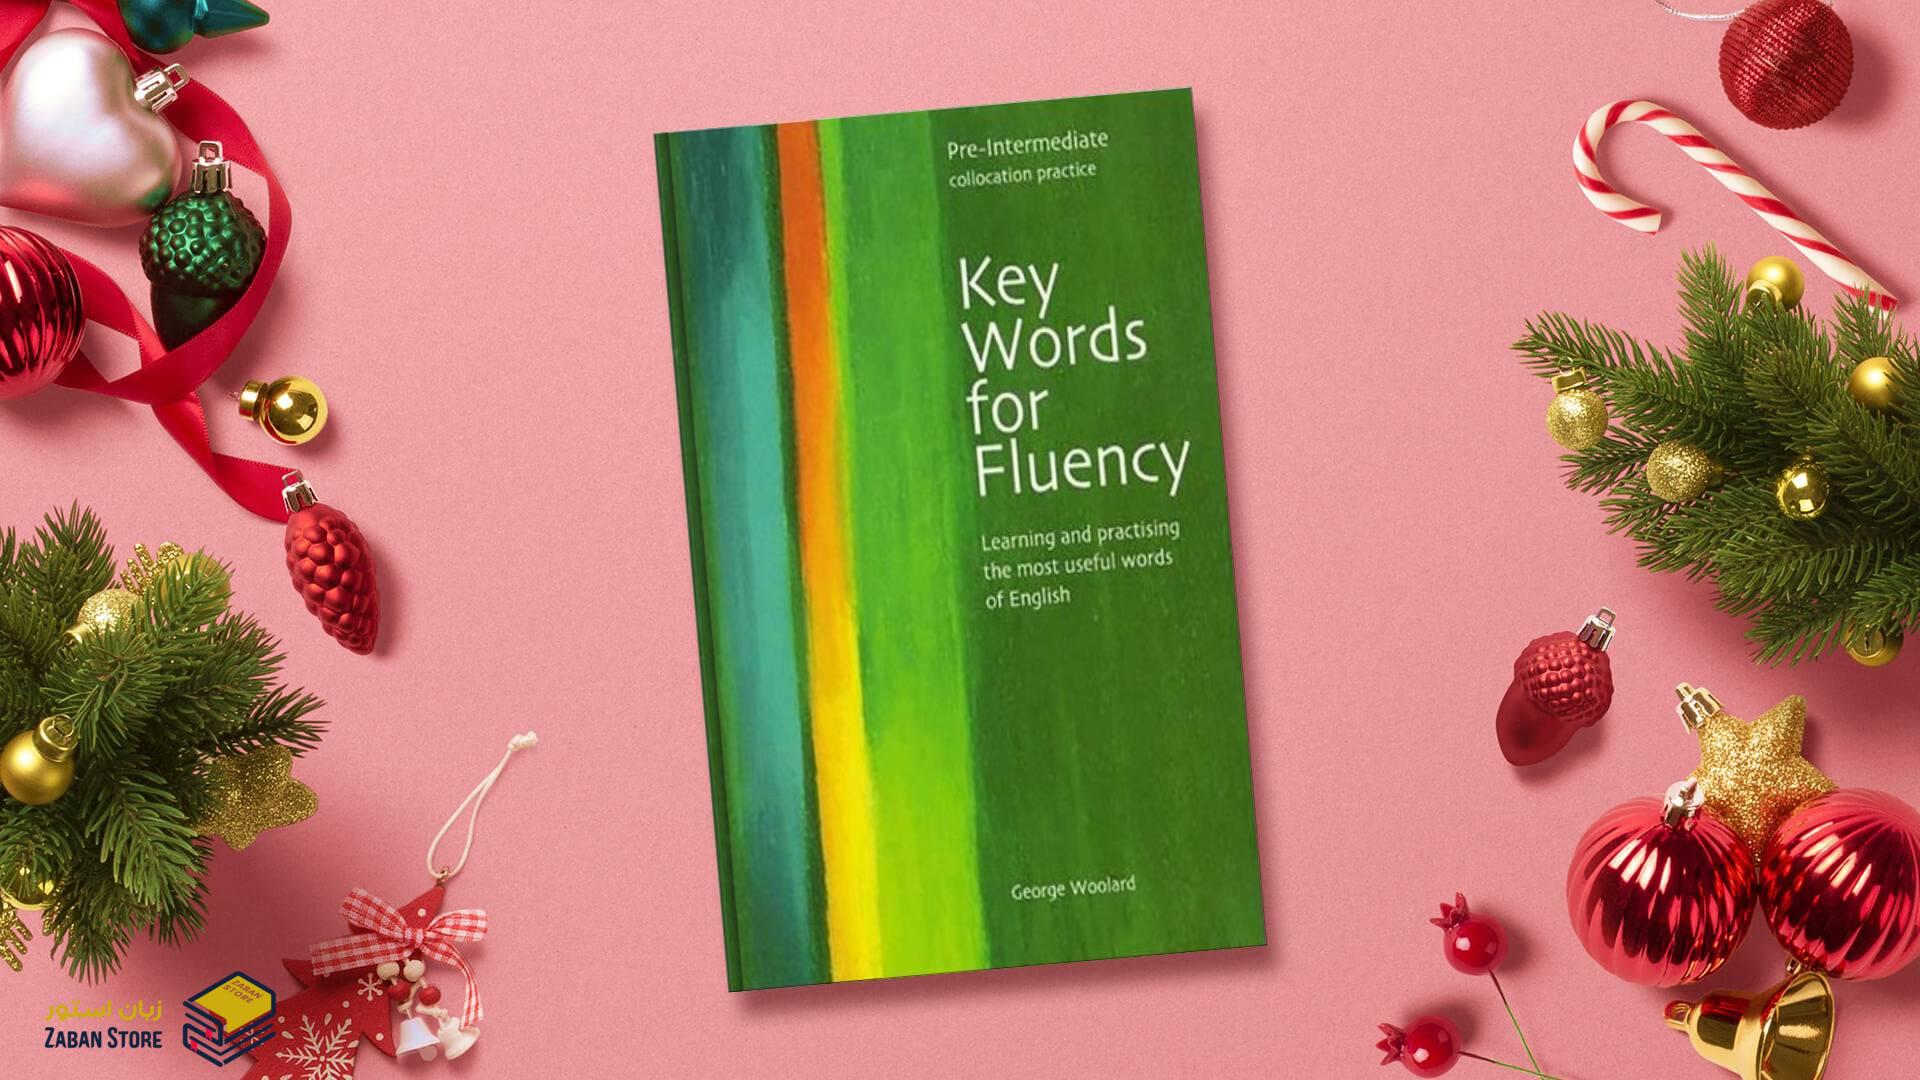 خرید کتاب زبان | فروشگاه اینترنتی کتاب زبان | Key Words for Fluency Pre Intermediate | کی وردز فور فلوئنسی پری اینترمدیت